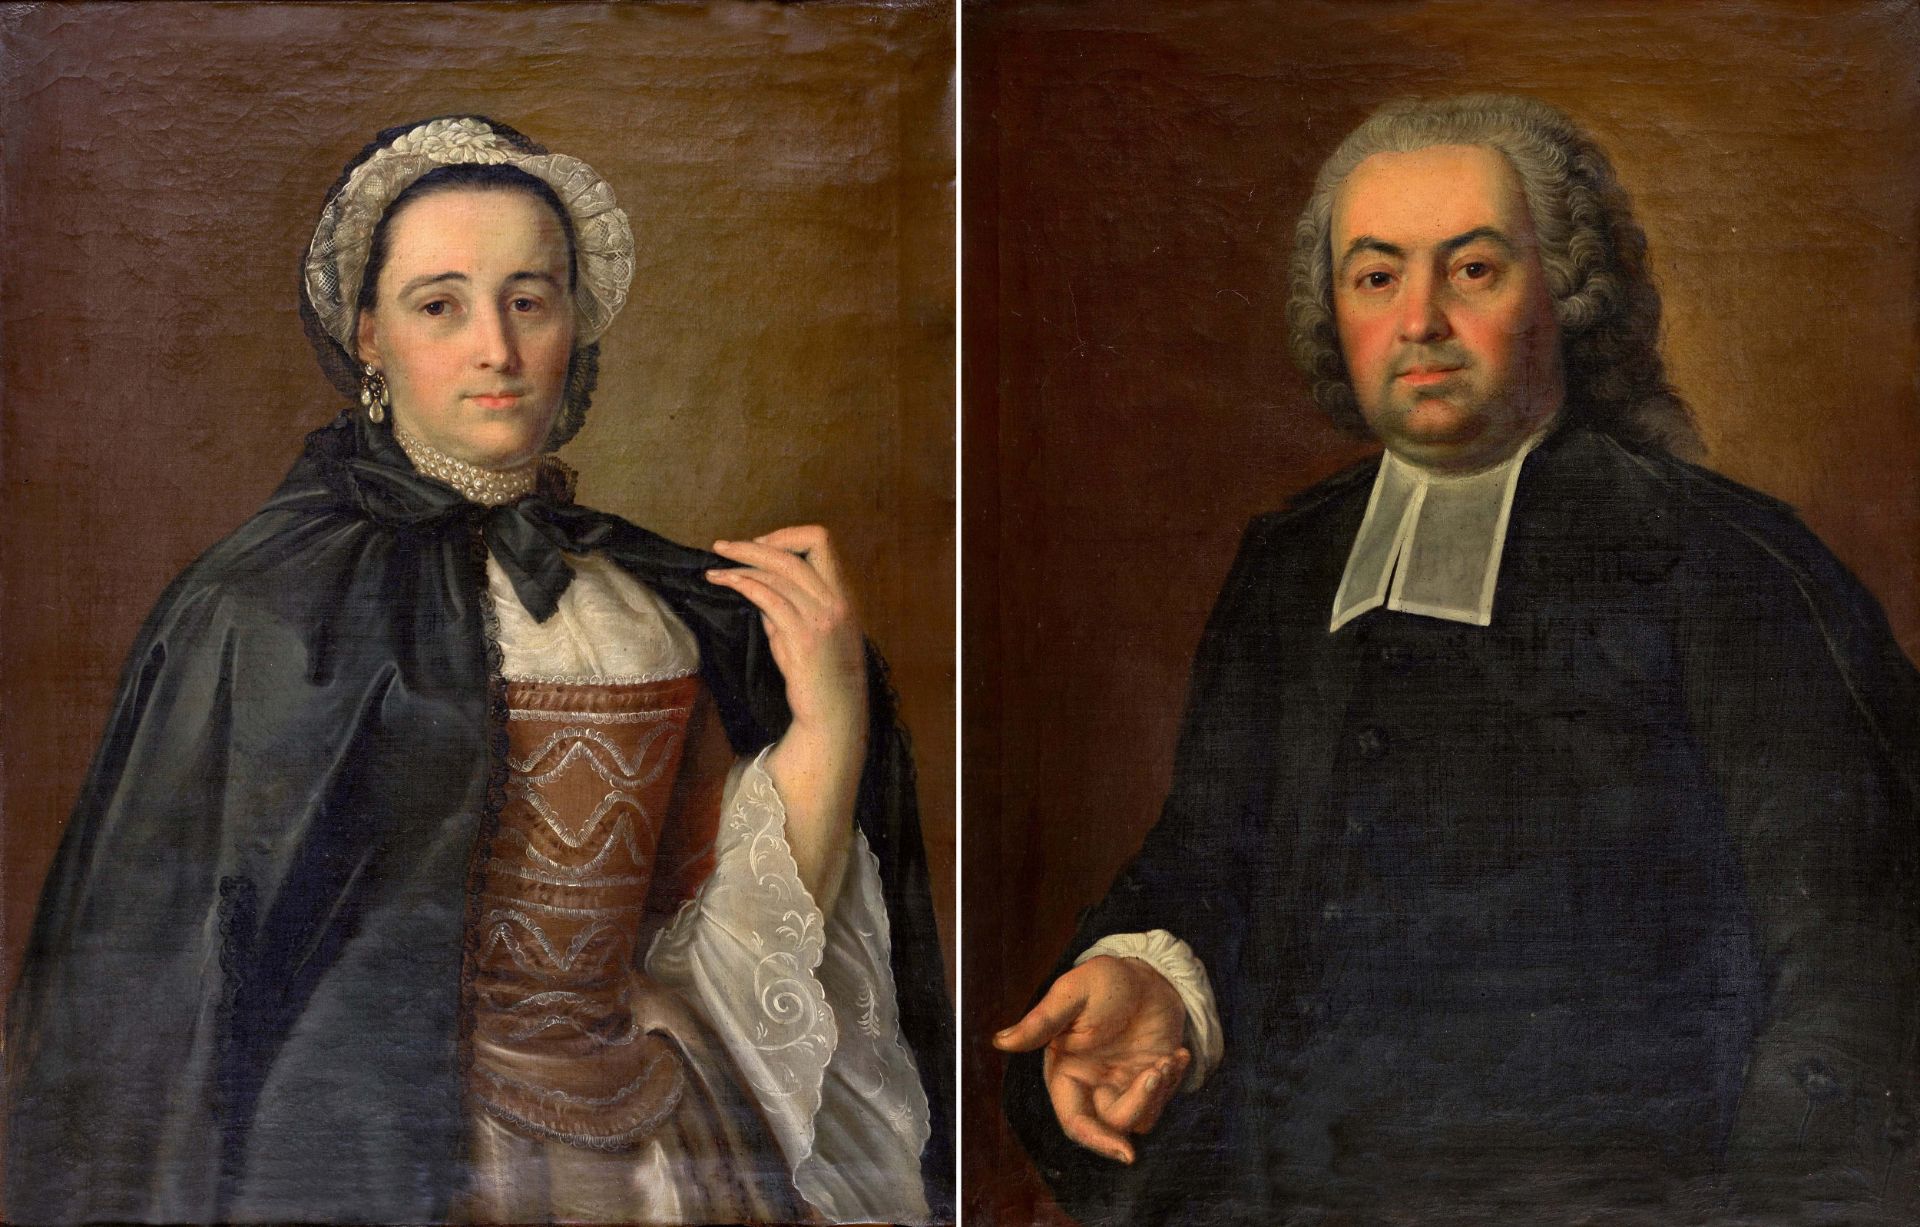 BARTH, SIGMUND: Porträt von Emanuel Rohr (1725-1805) und Susana Rohr (1736-1812). Gegenstücke.